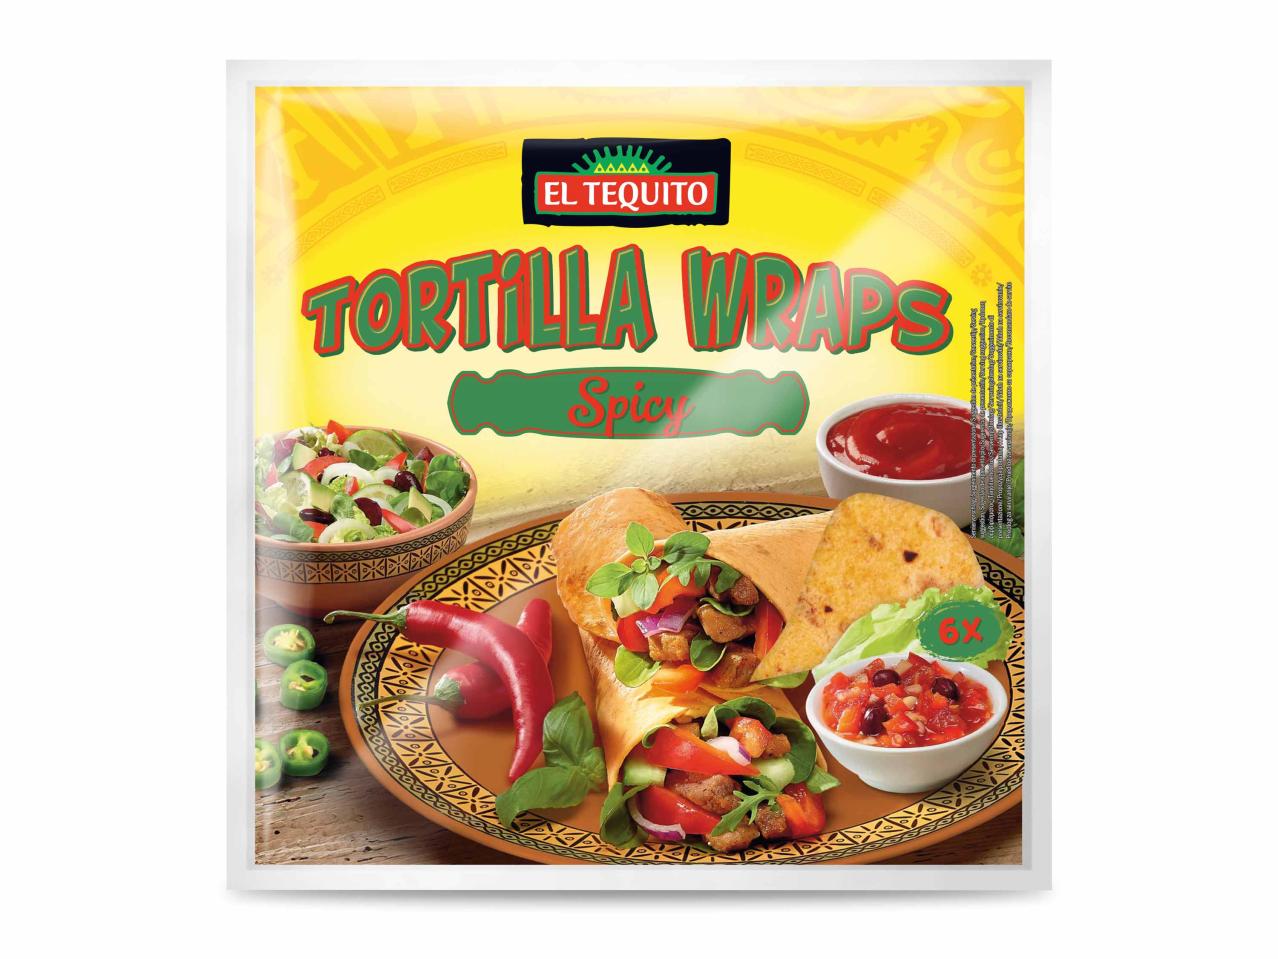 Tortilla Wraps Chili